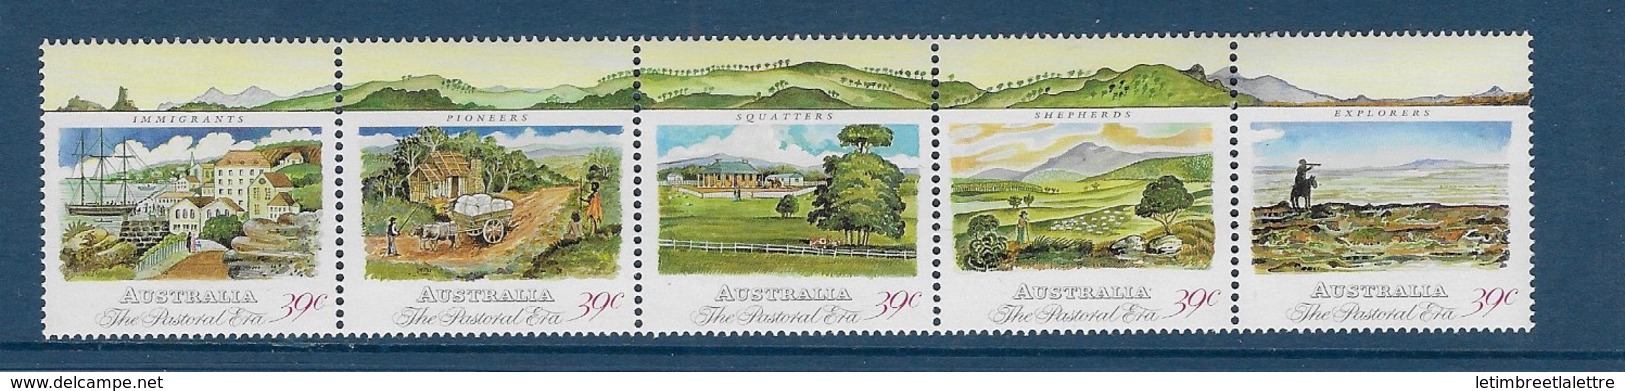 Australie N°1113 à 1117** - Mint Stamps